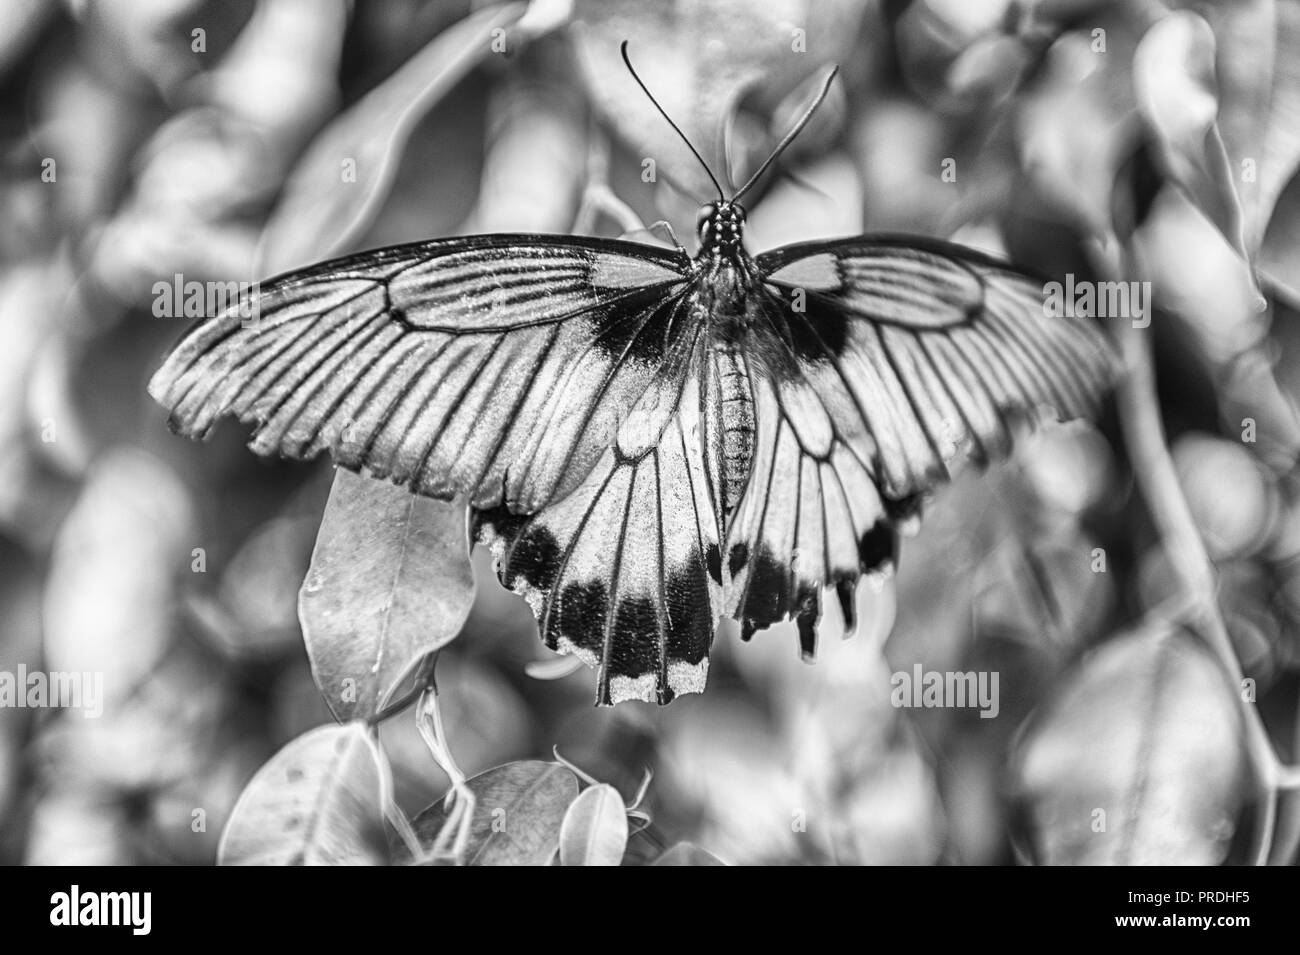 Papilio Lowi, alias Grand Mormon jaune ou asiatique est un swallowtail butterfly tropical. Ici montré en étant debout sur une feuille Banque D'Images